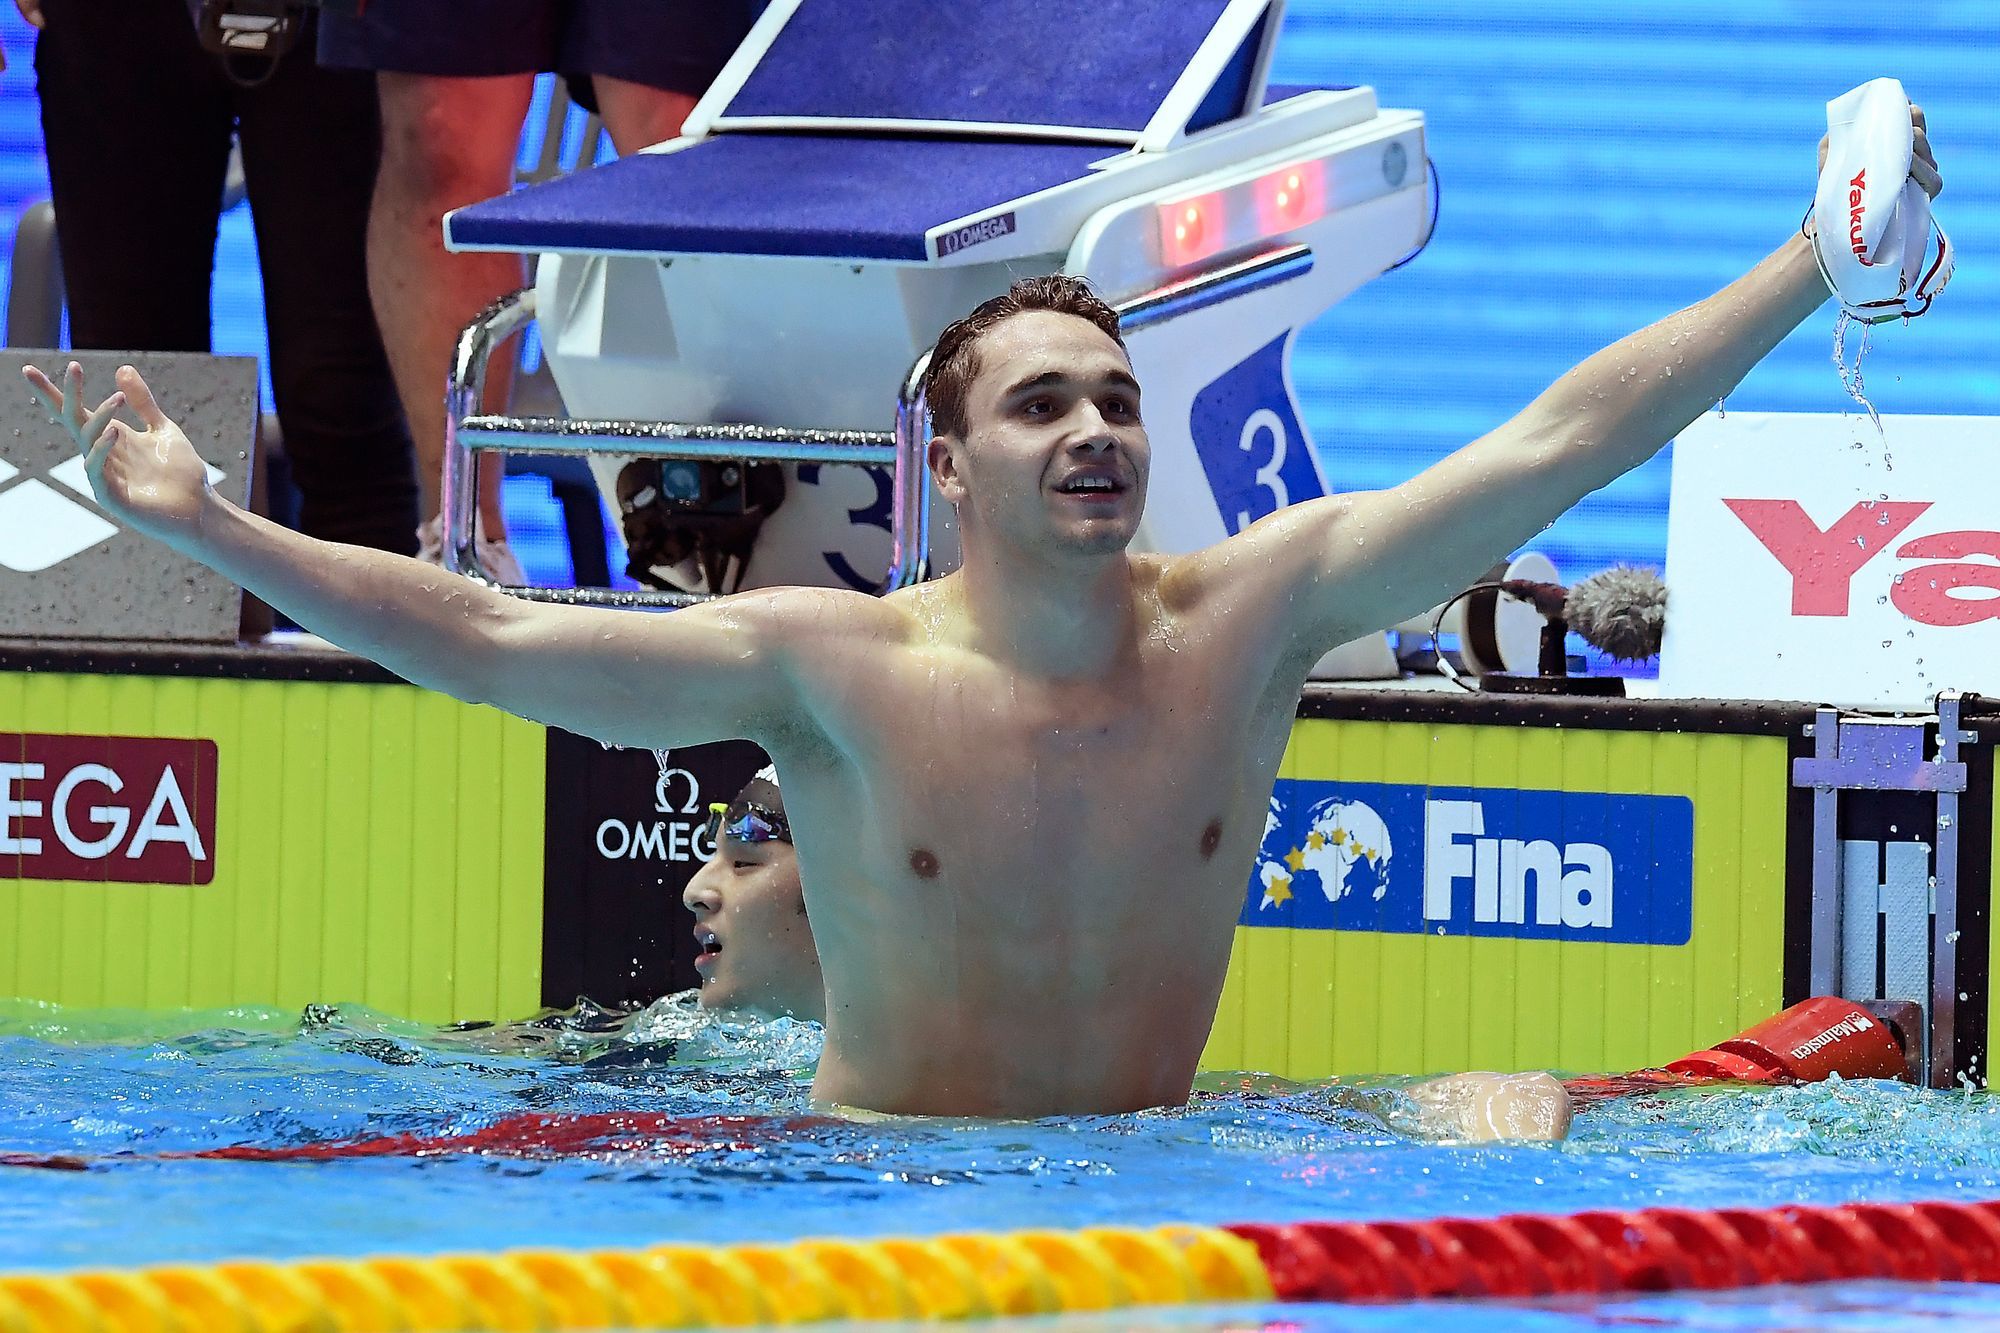 Milák örül, hogy újra medencében edzhet, de az igazi boldogságot azt jelenti majd, ha versenyezhet. /Fotó: MTI - Kovács Tamás